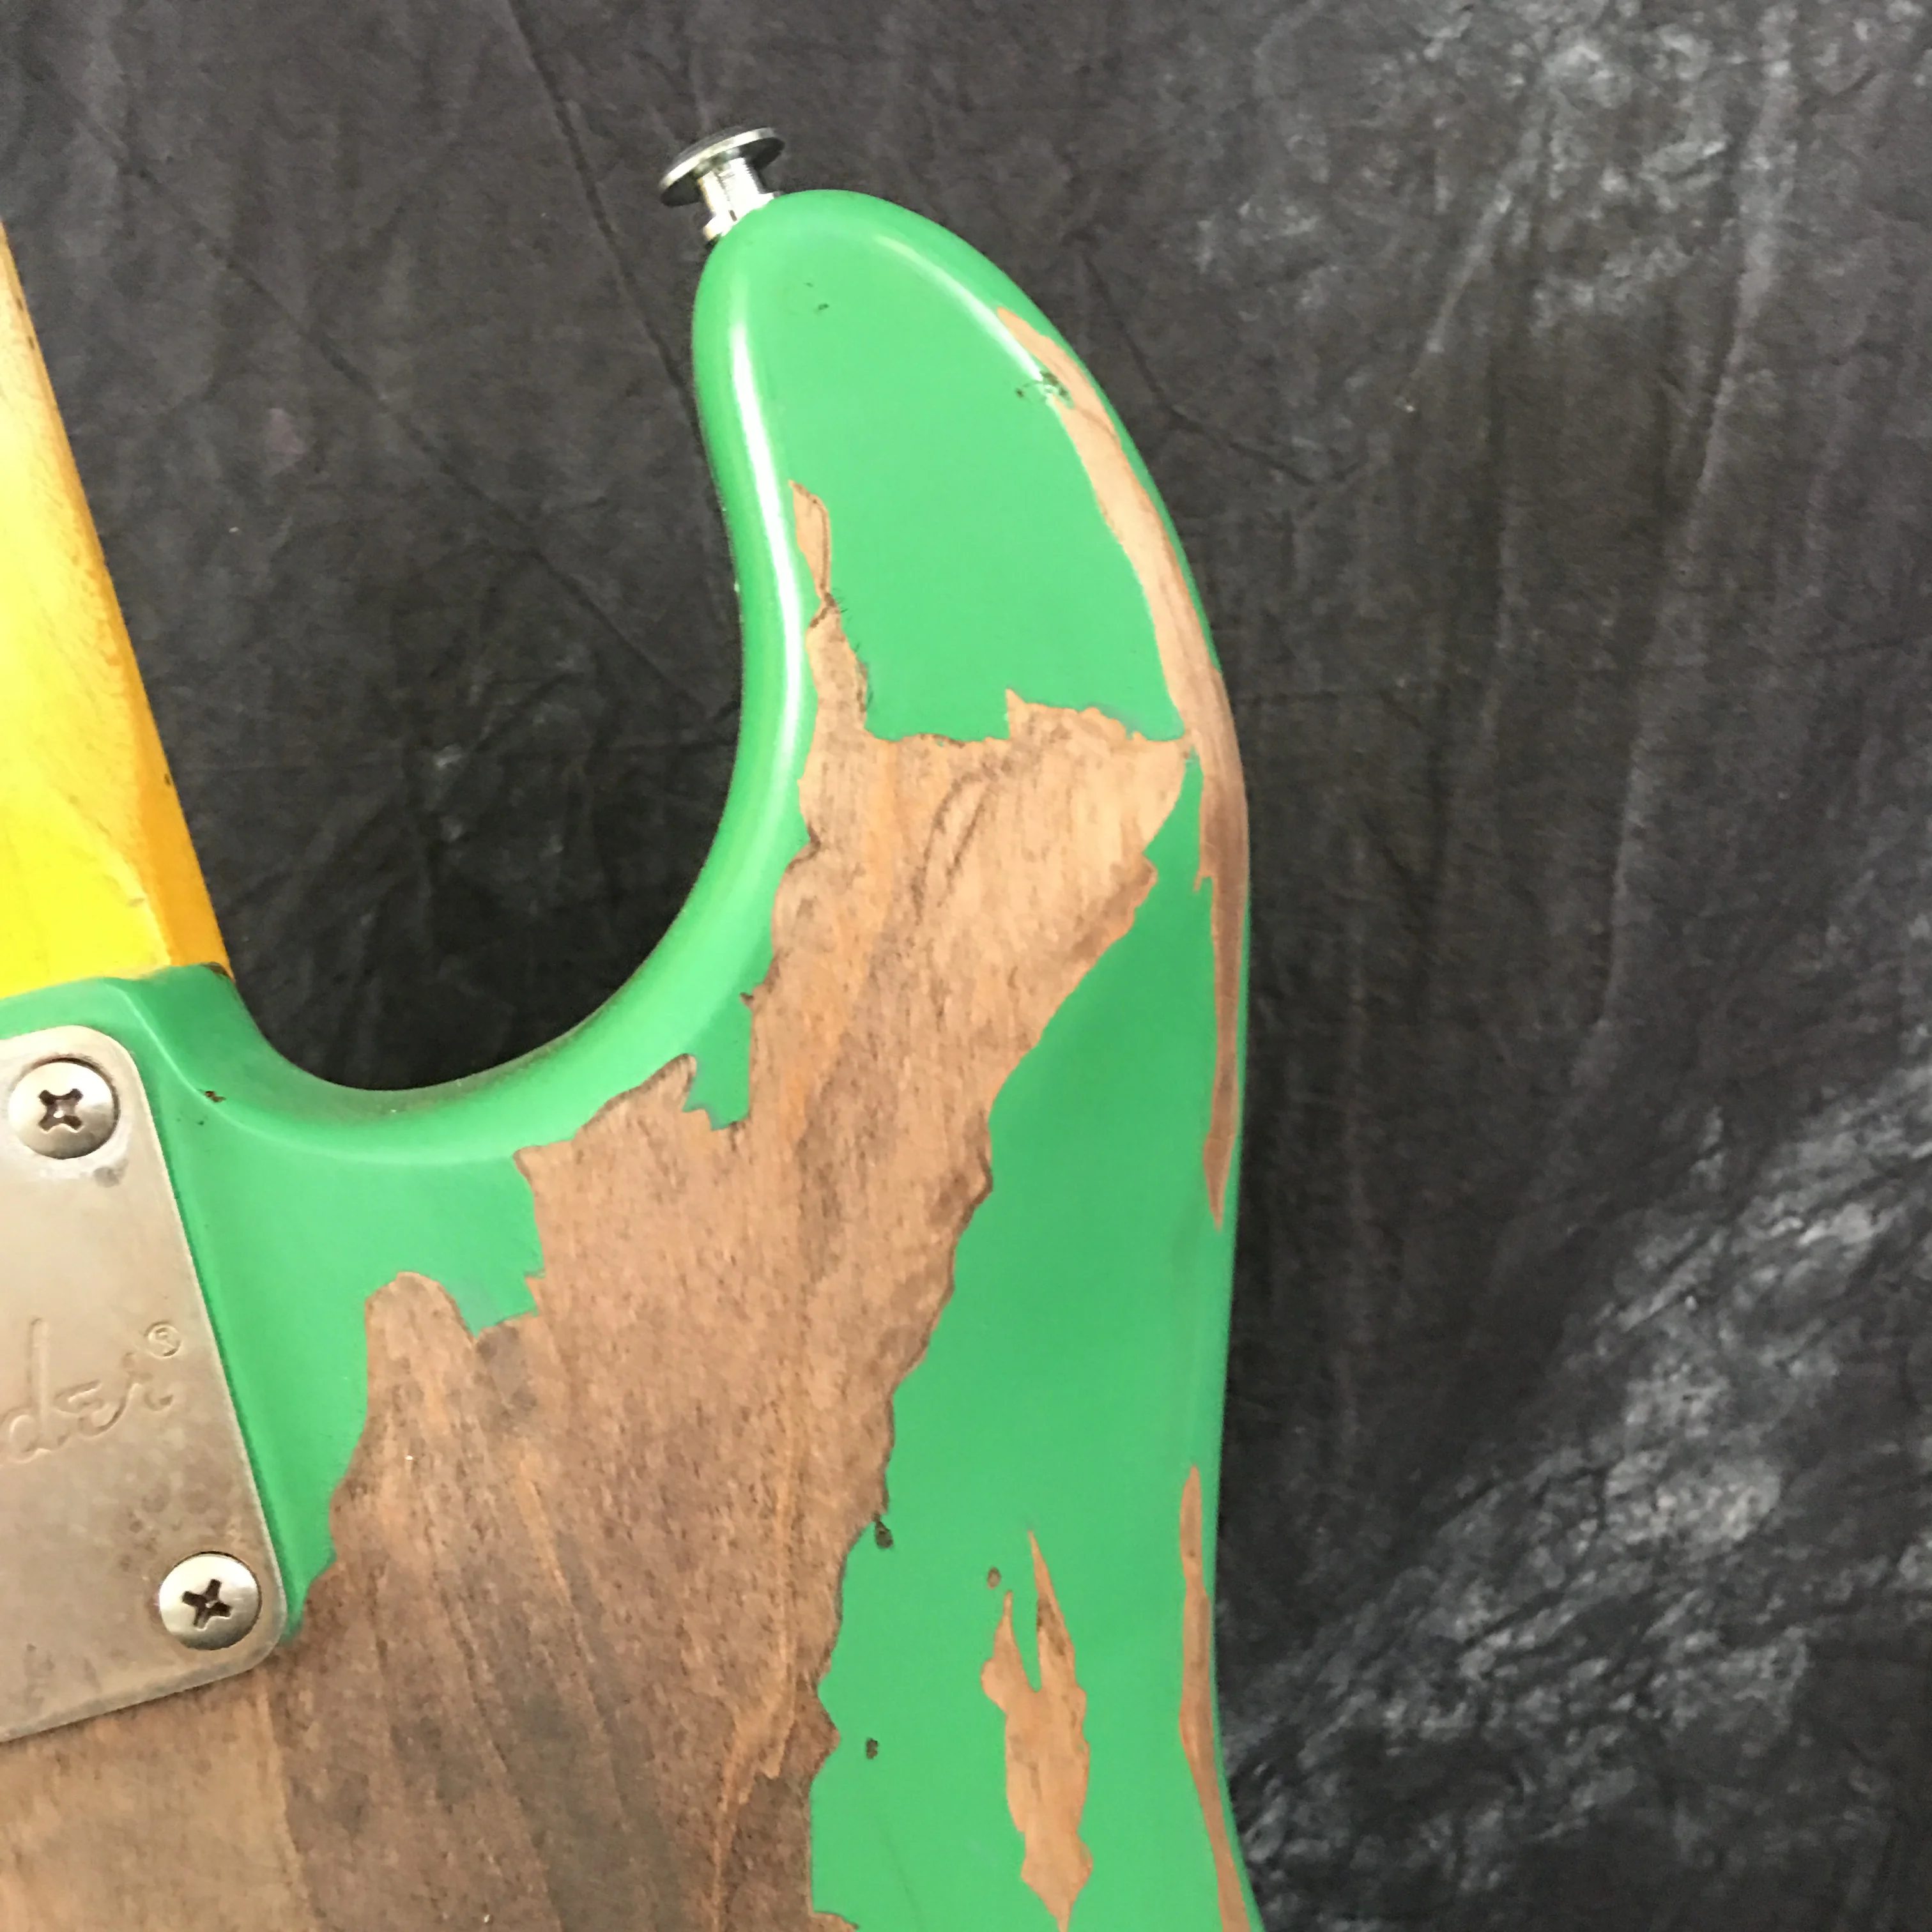 Distressed Green Maple High qualityCustom Shop, классические зеленые St гитары вручную. Поддержка изготовления на заказ. ручная работа st гитара